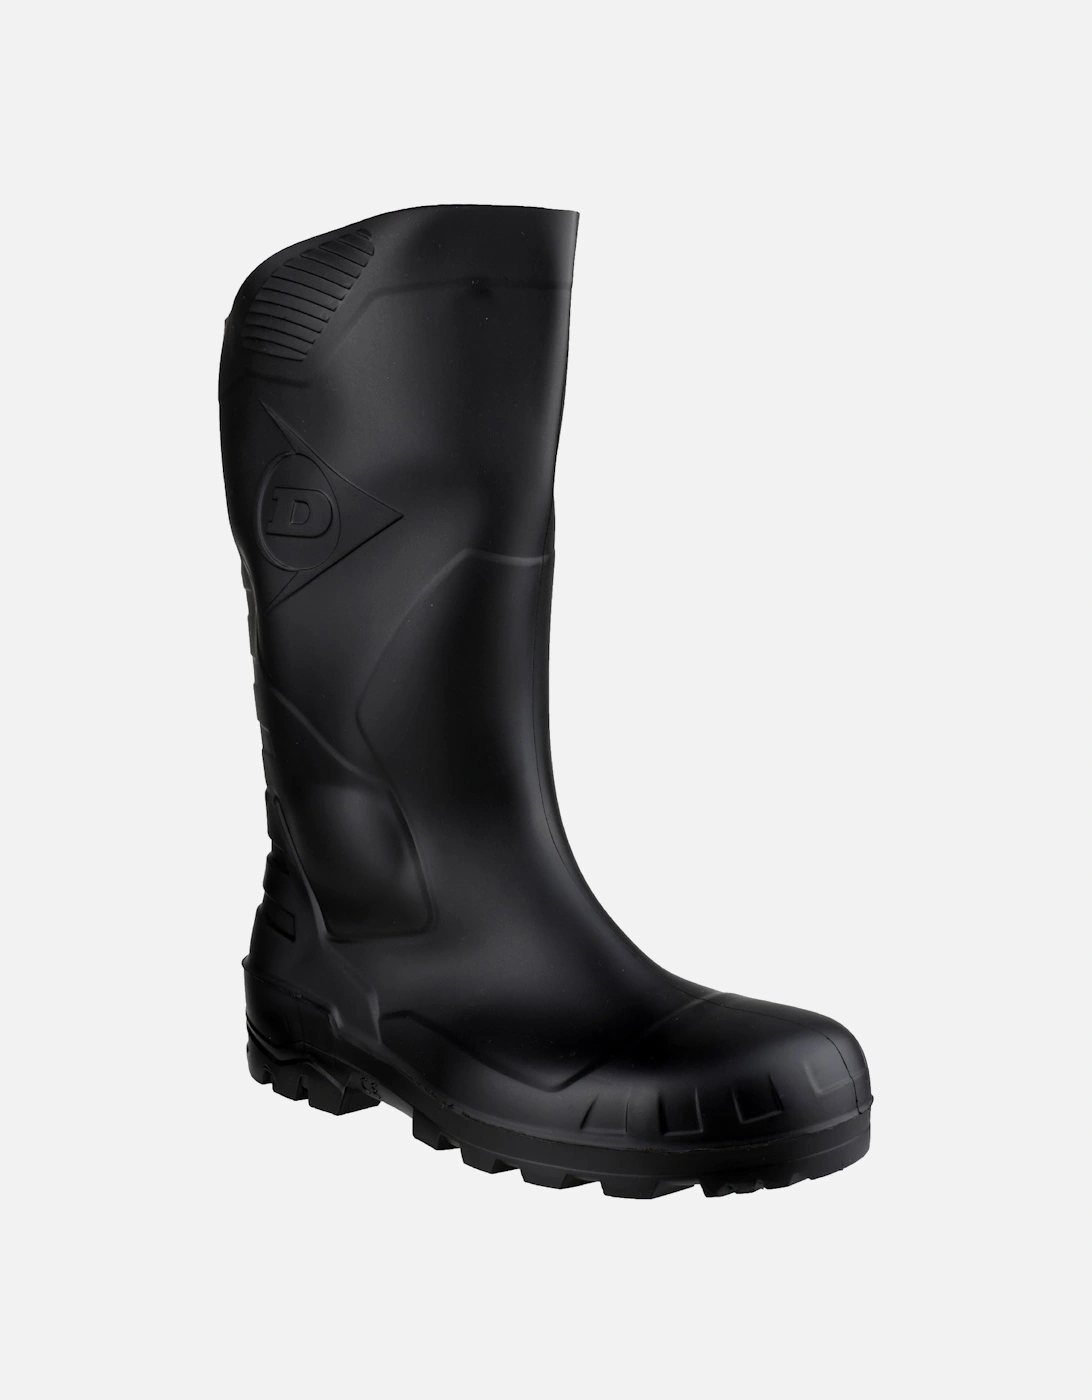 Devon Unisex Black Safety Wellington Boots, 6 of 5